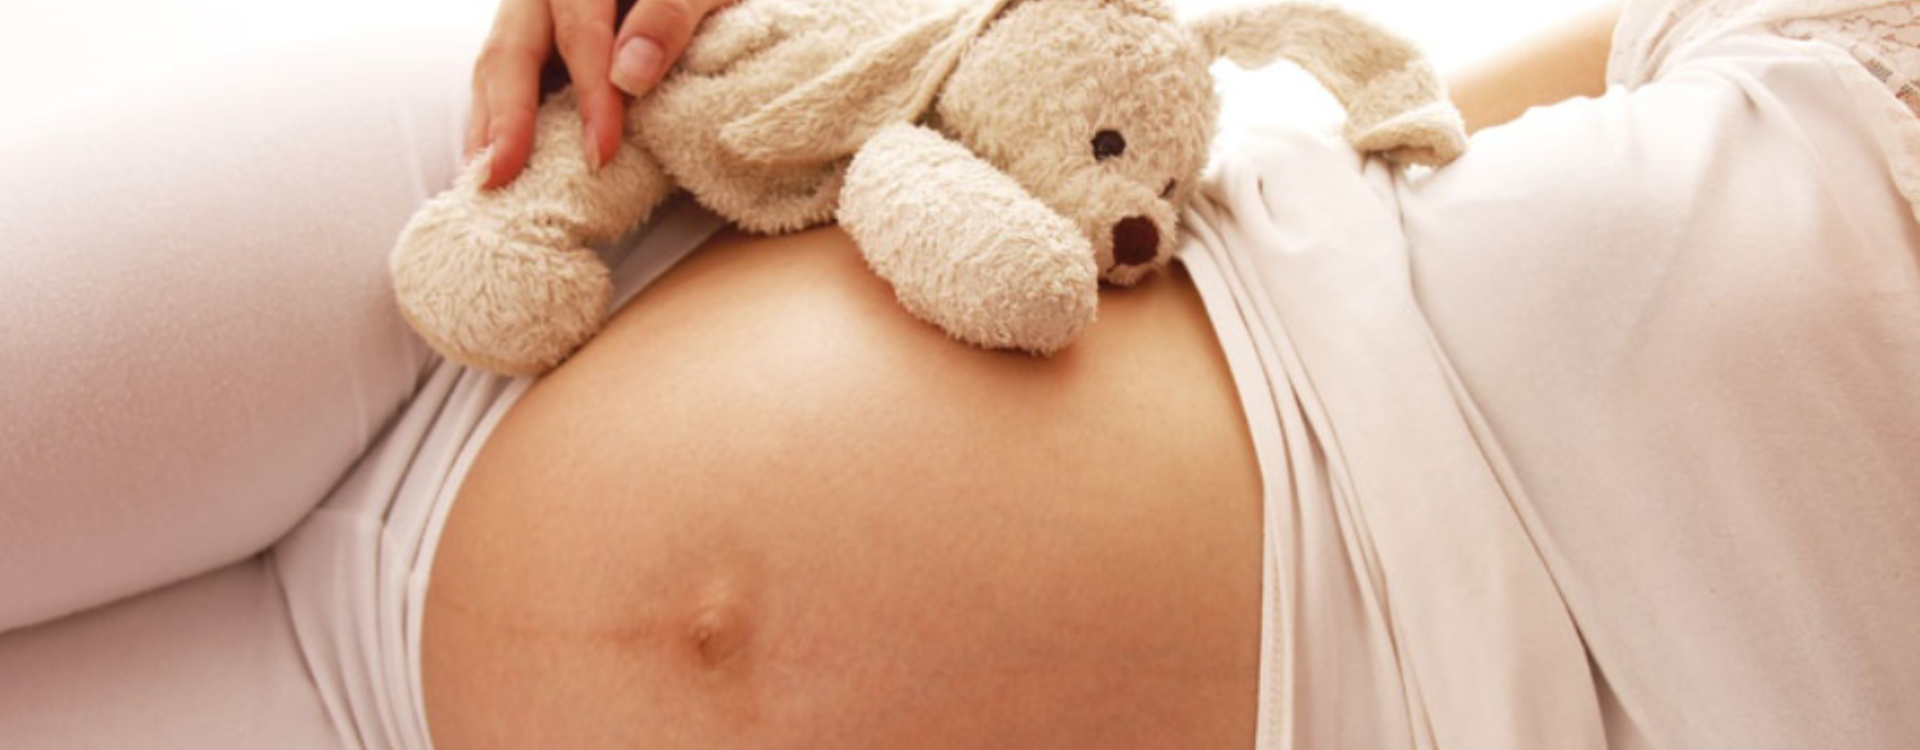 Pregna Plus właściwa suplementacja dla kobiet w ciąży